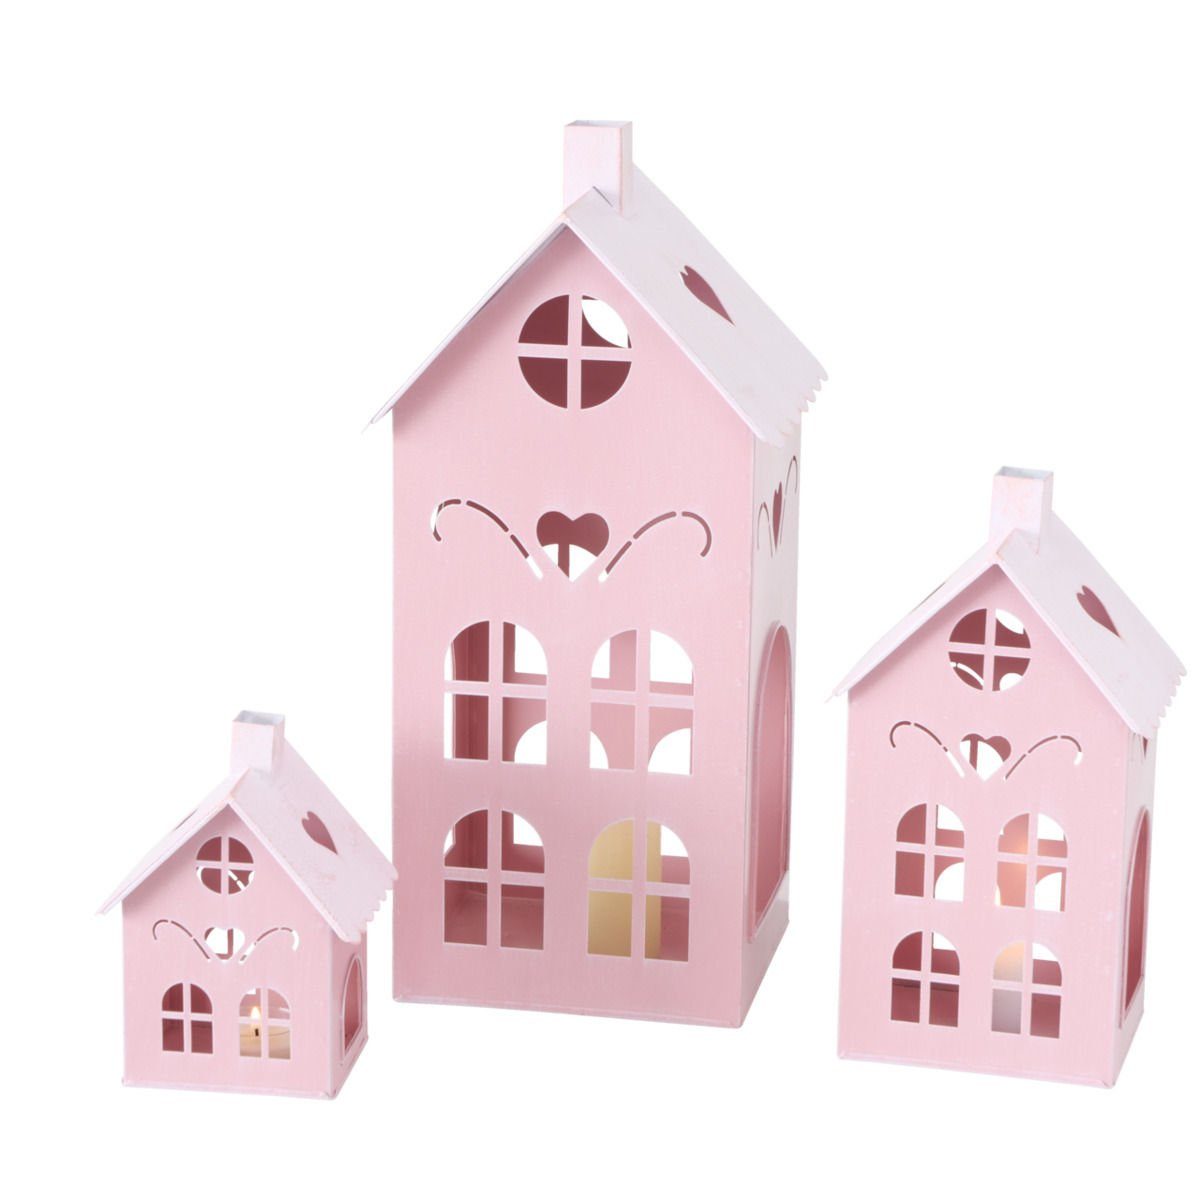 Spetebo Kerzenlaterne Laterne KUFSTEIN 3er Set 40 / 26 / 17 cm - rosa, Metall Windlicht pink in Haus Form mit Herzen